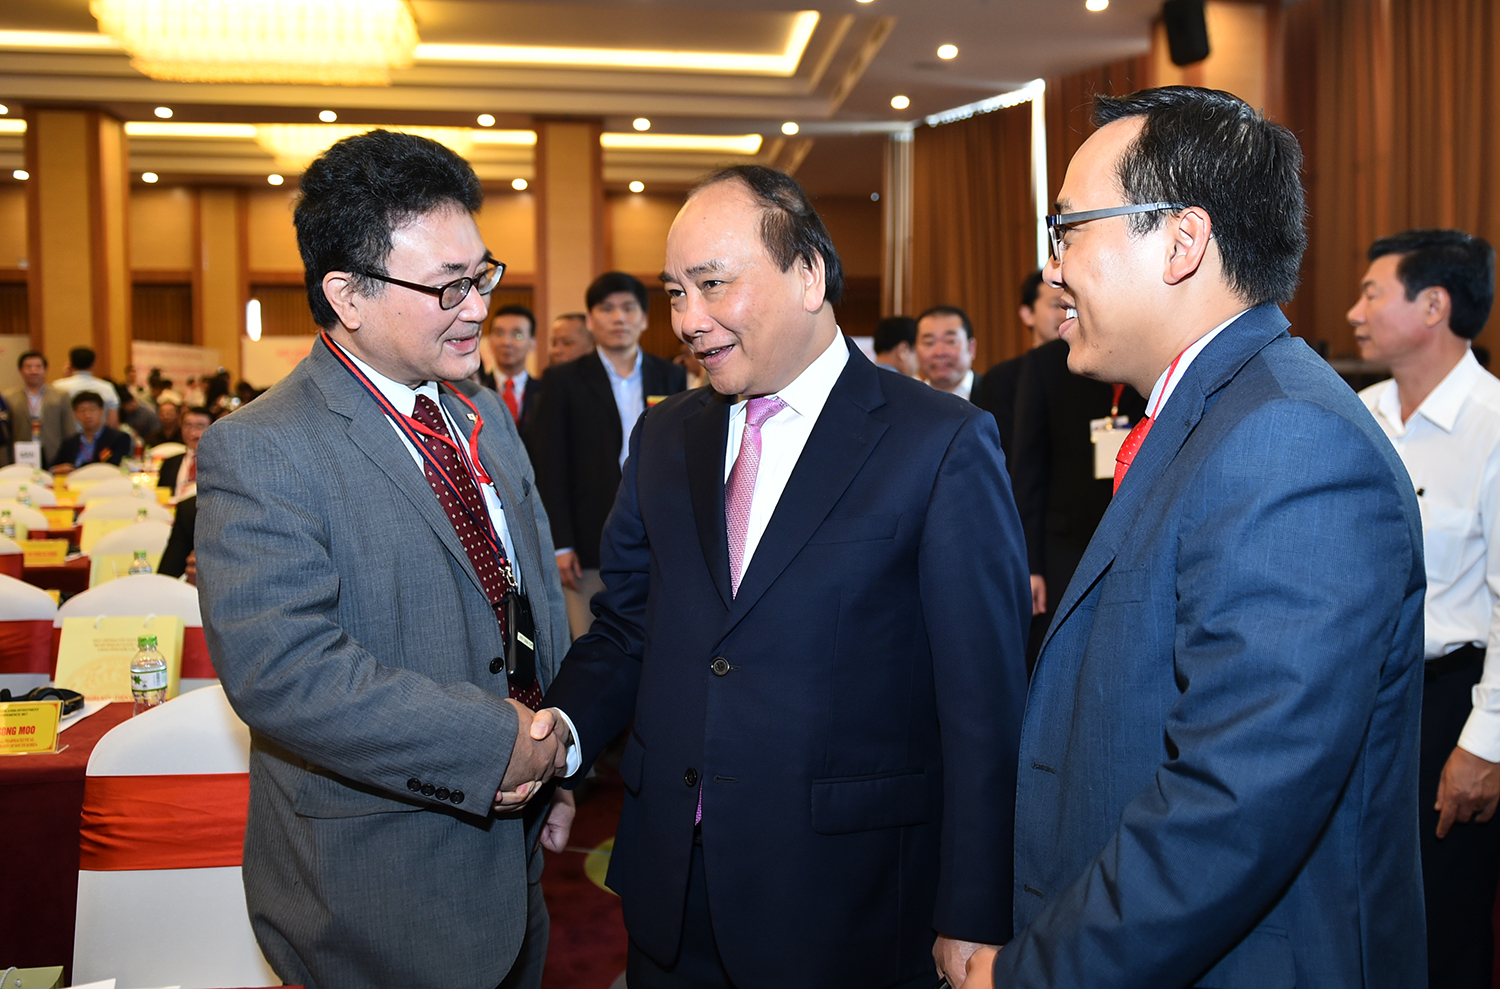 Thủ tướng Nguyễn Xuân Phúc cùng các đại biểu dự Hội nghị. - Ảnh: VGP/Quang Hiếu